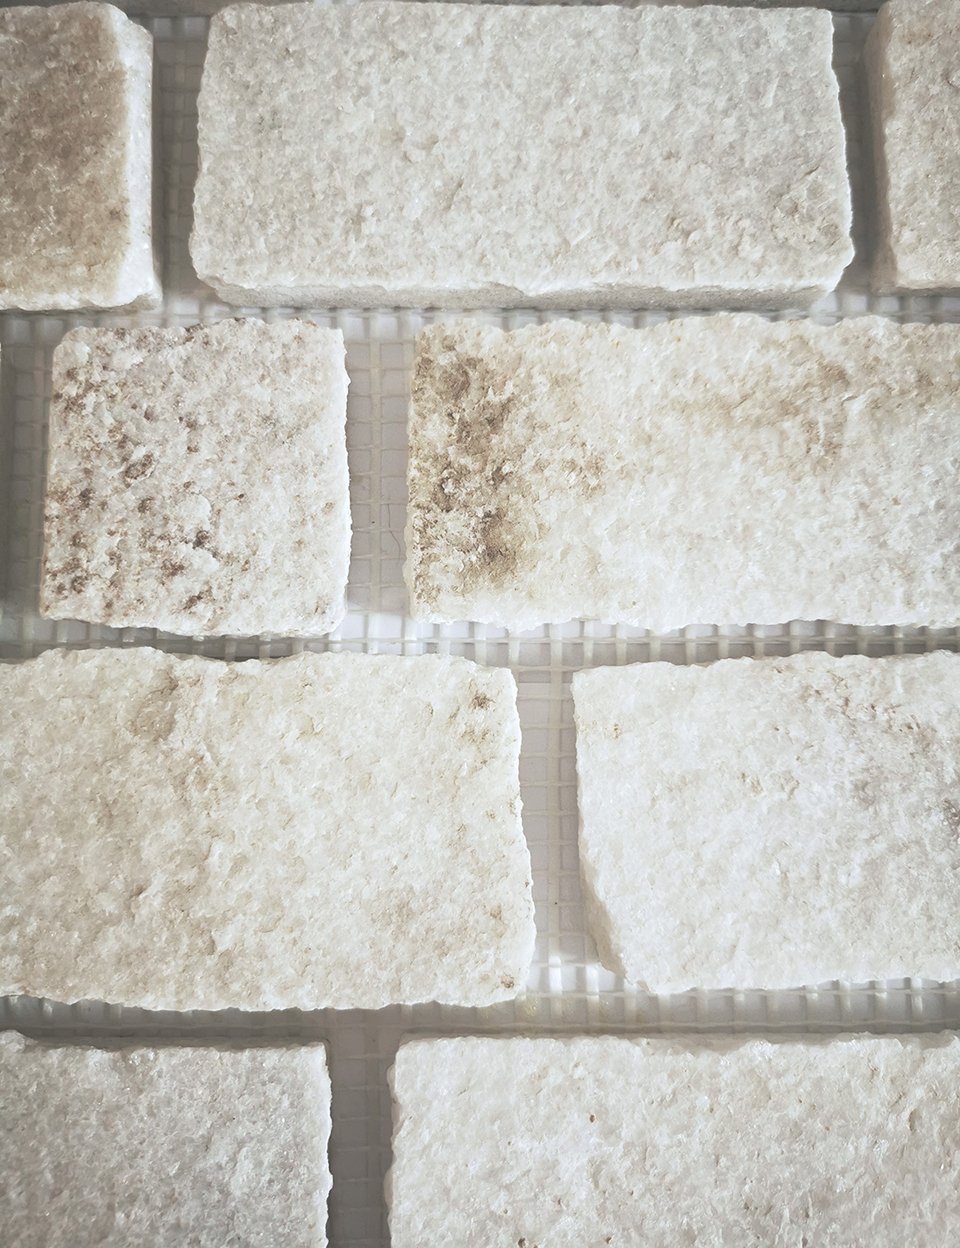 Mosani Mosaikfliesen Schiefer Mosaik Fliese Brick weiß Naturstein hellbeige Küche